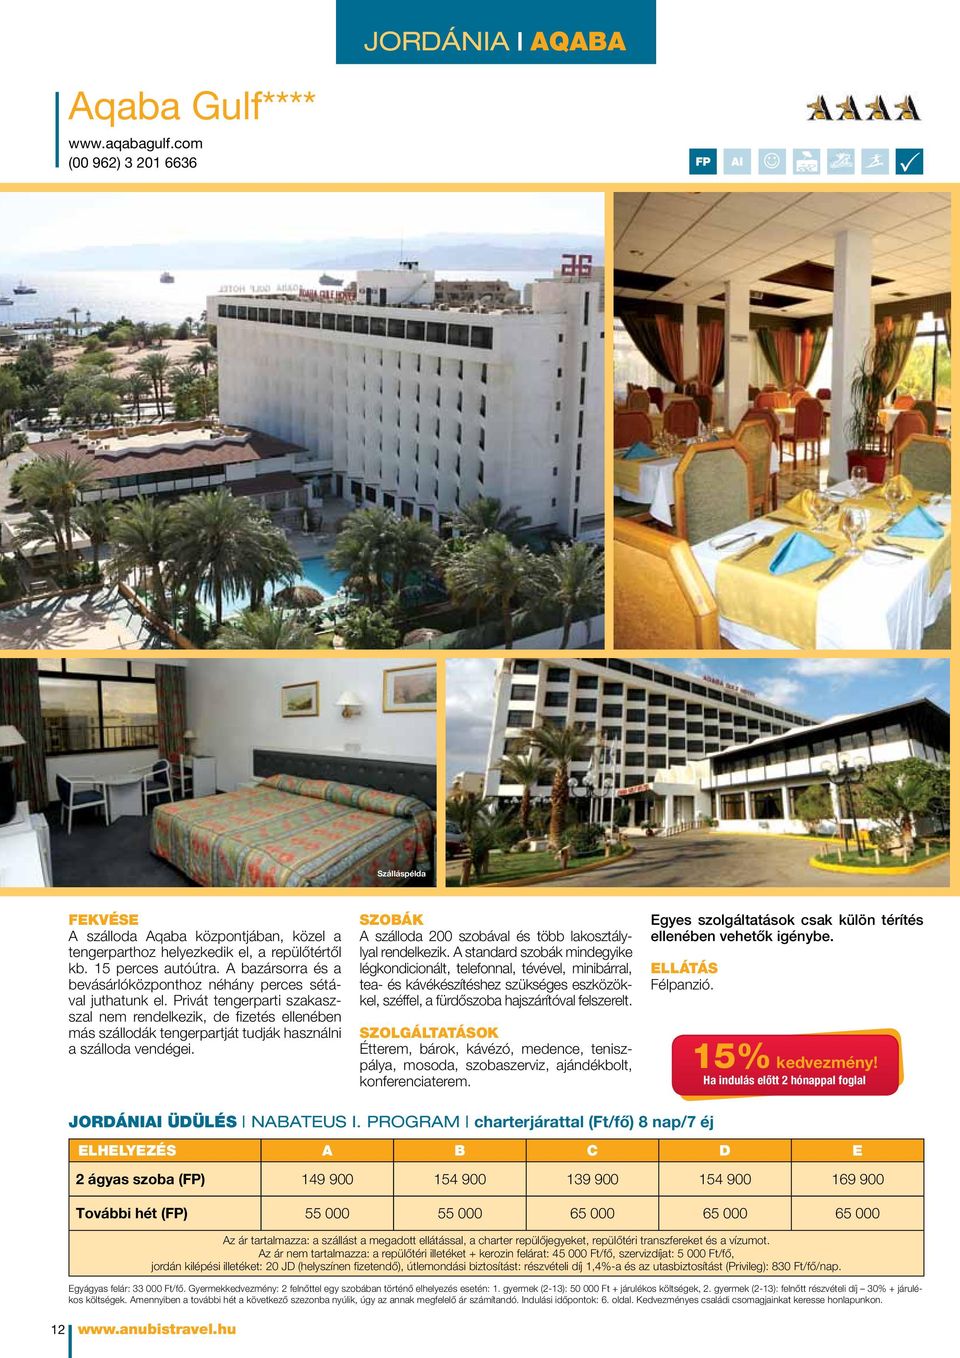 Privát tengerparti szakaszszal nem rendelkezik, de fizetés ellenében más szállodák tengerpartját tudják használni a szálloda vendégei.